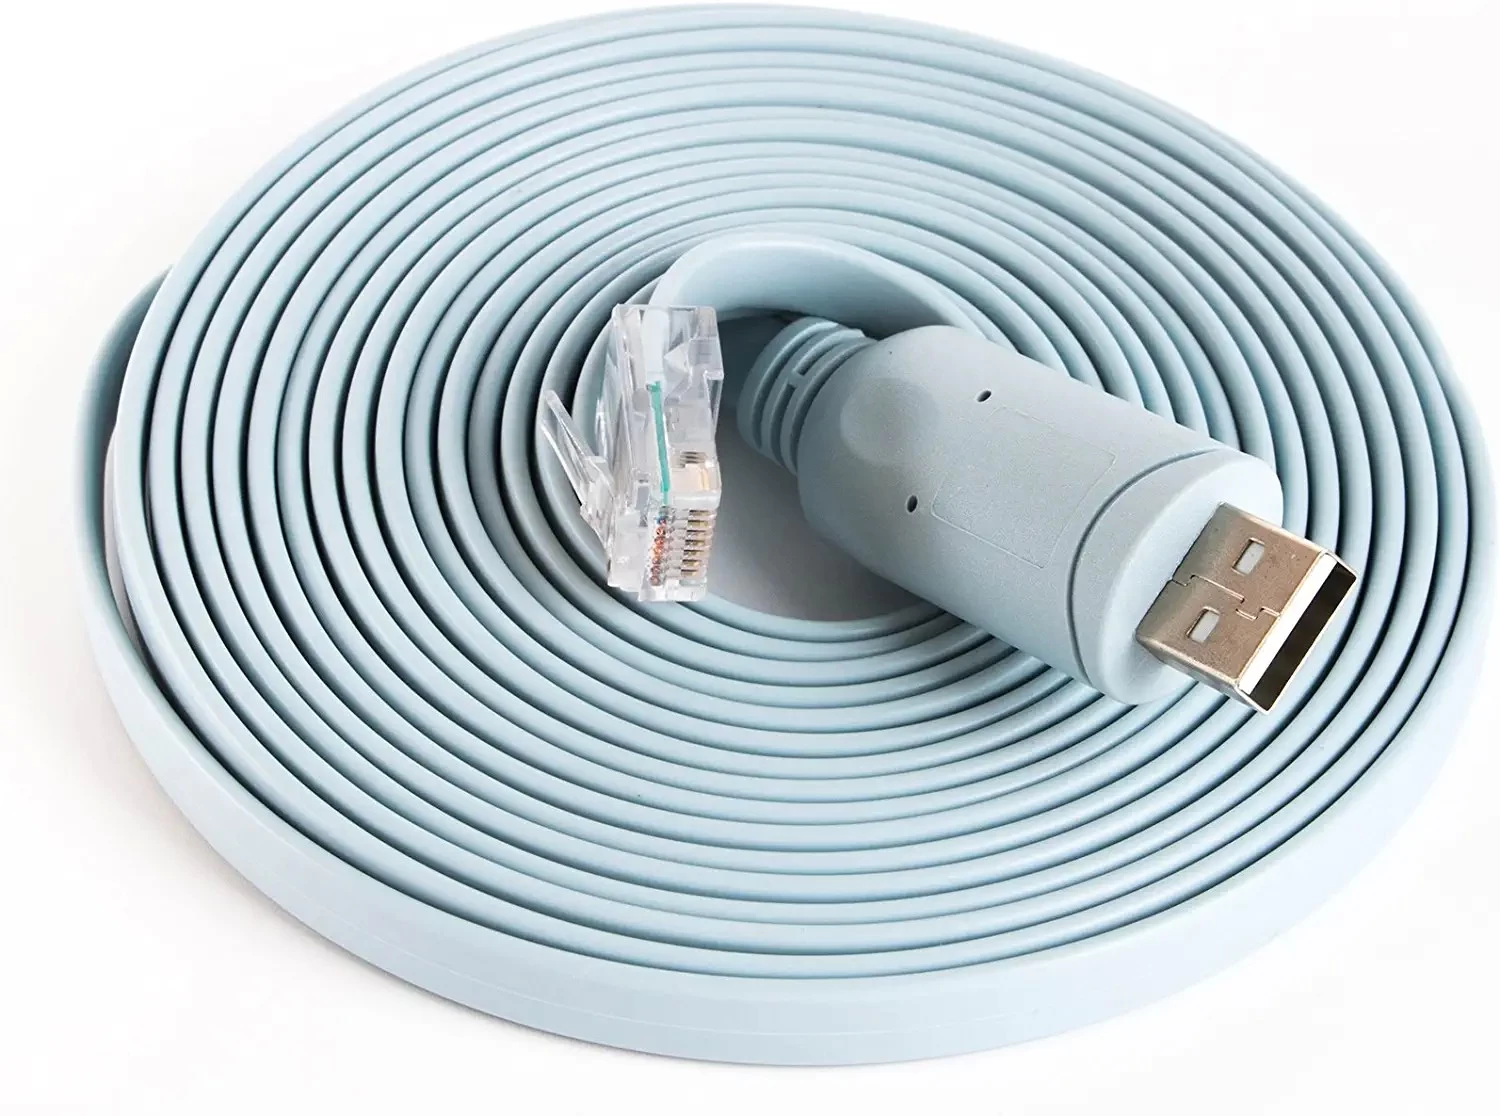 用于 Cisco 路由器电缆 Ftdi 芯片组 USB 到 Rj45 适配器电缆的替换 USB 控制台电缆，适用于 Windows、Mac、Linux 中的笔记本电脑